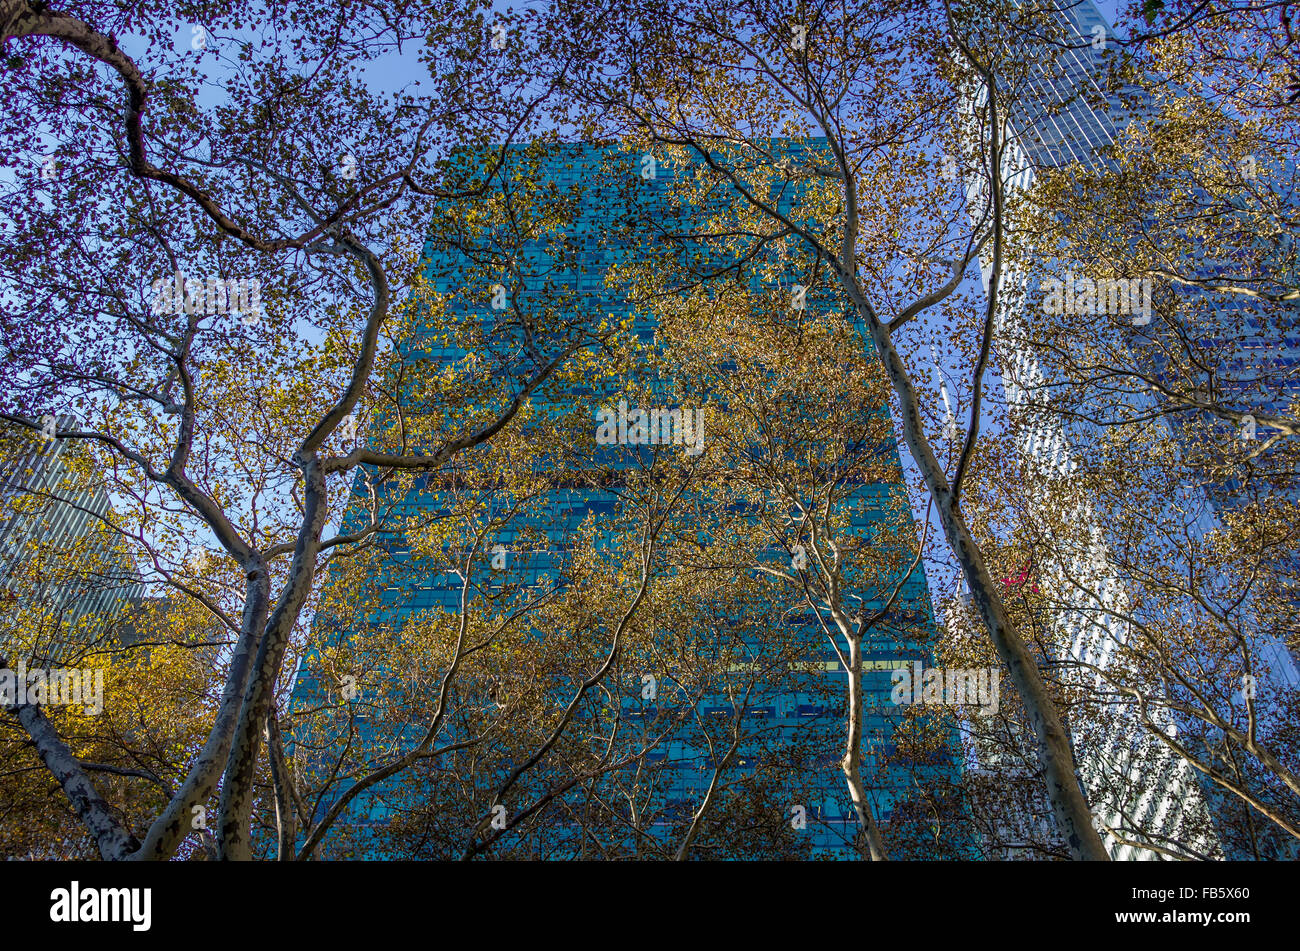 De grands bâtiments, des gratte-ciel de Manhattan, à New York avec des arbres dans le soleil d'hiver Banque D'Images